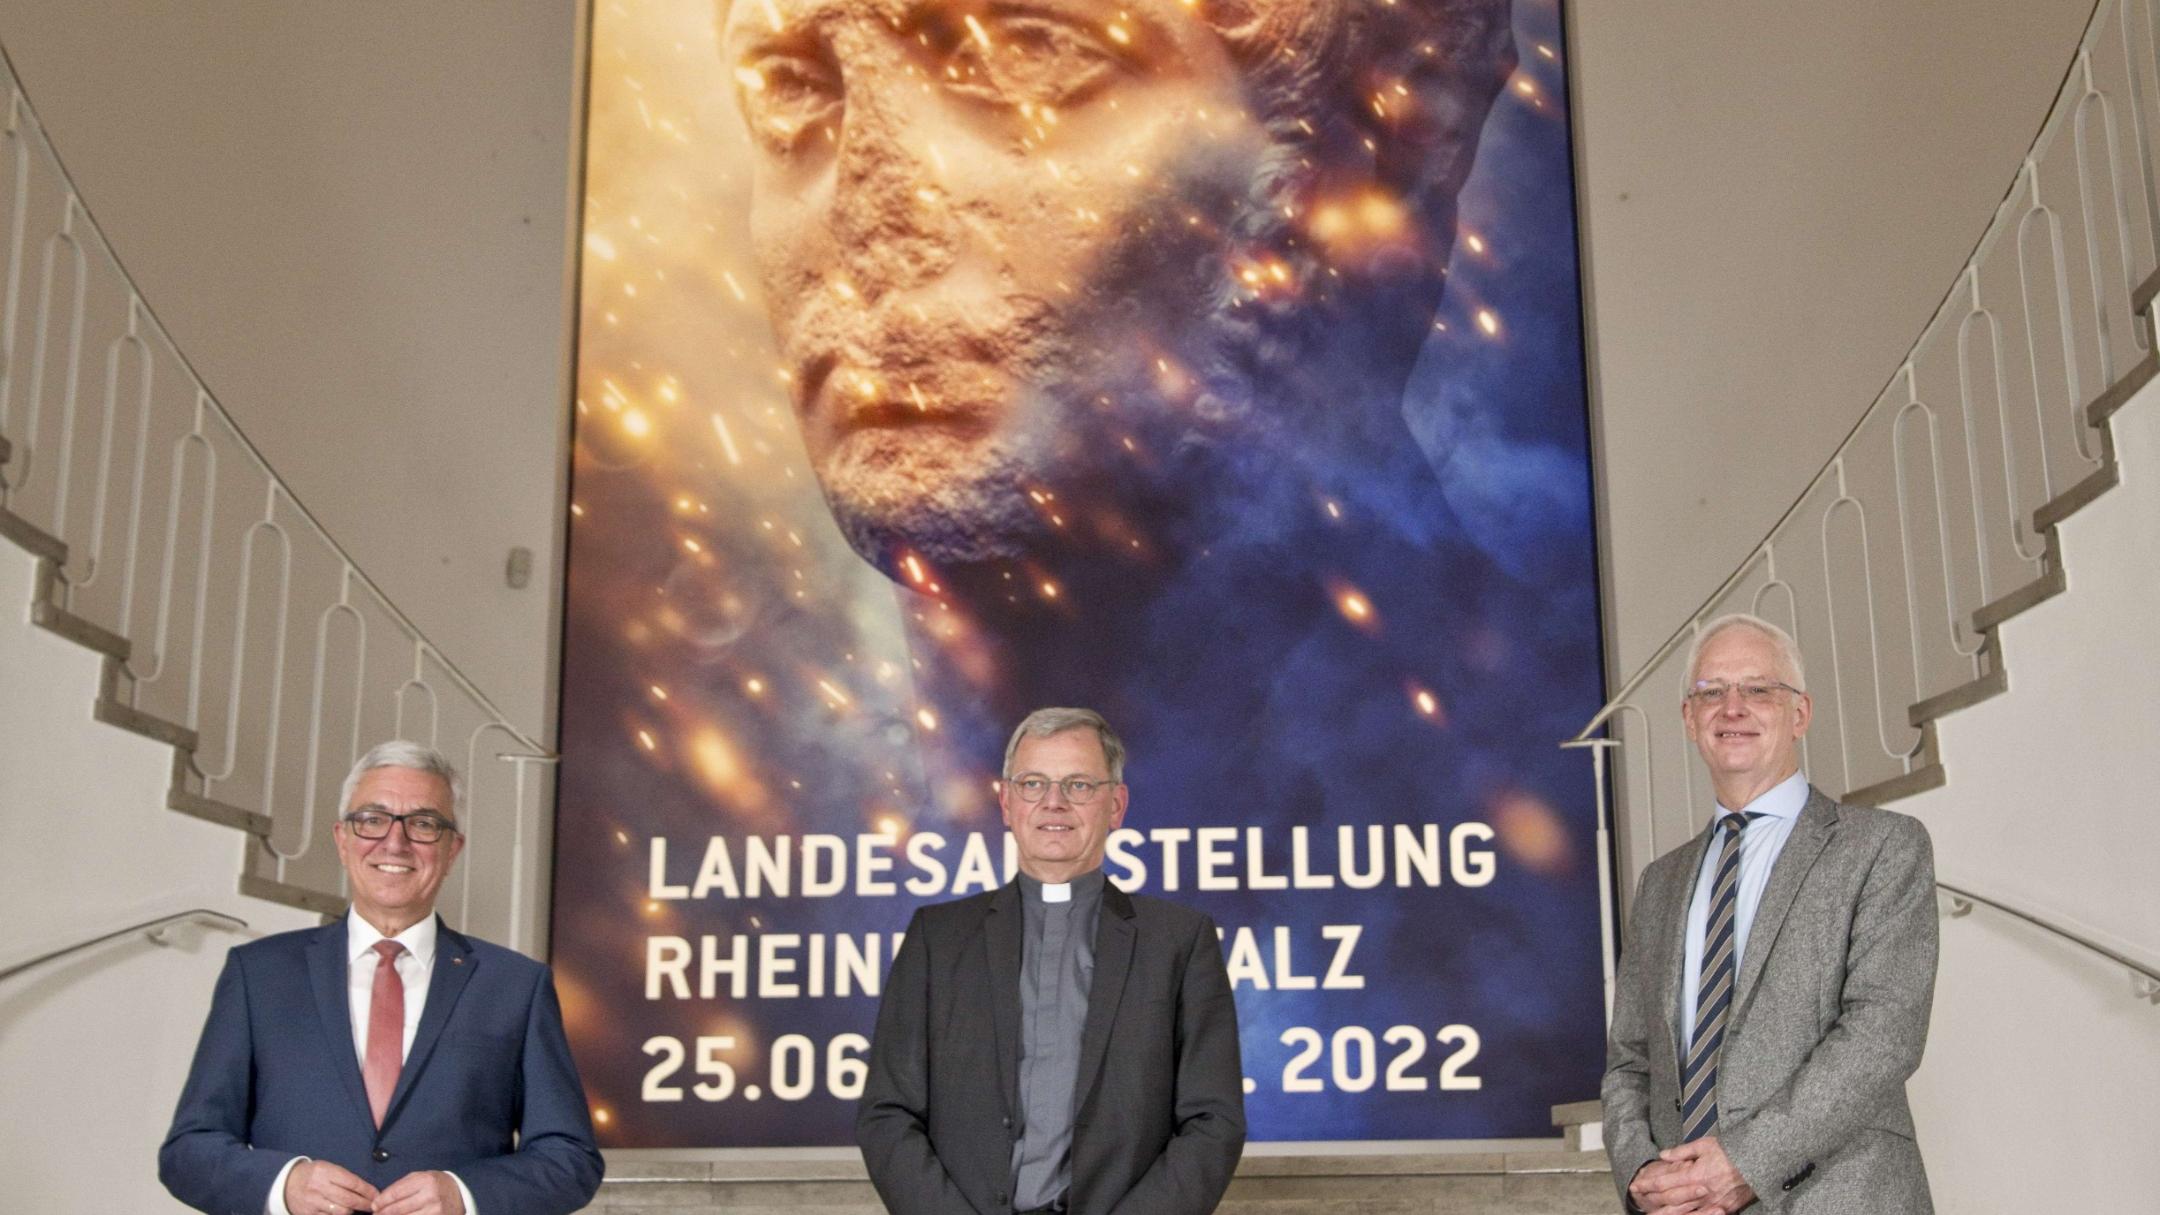 BU: (V.l.n.r.) Minister Roger Lewentz, Generalvikar Dr. Ulrich Graf von Plettenberg und Oberbürgermeister Wolfram Leibe. (Bild: Rheinisches Landesmuseum/Thomas Zühmer)